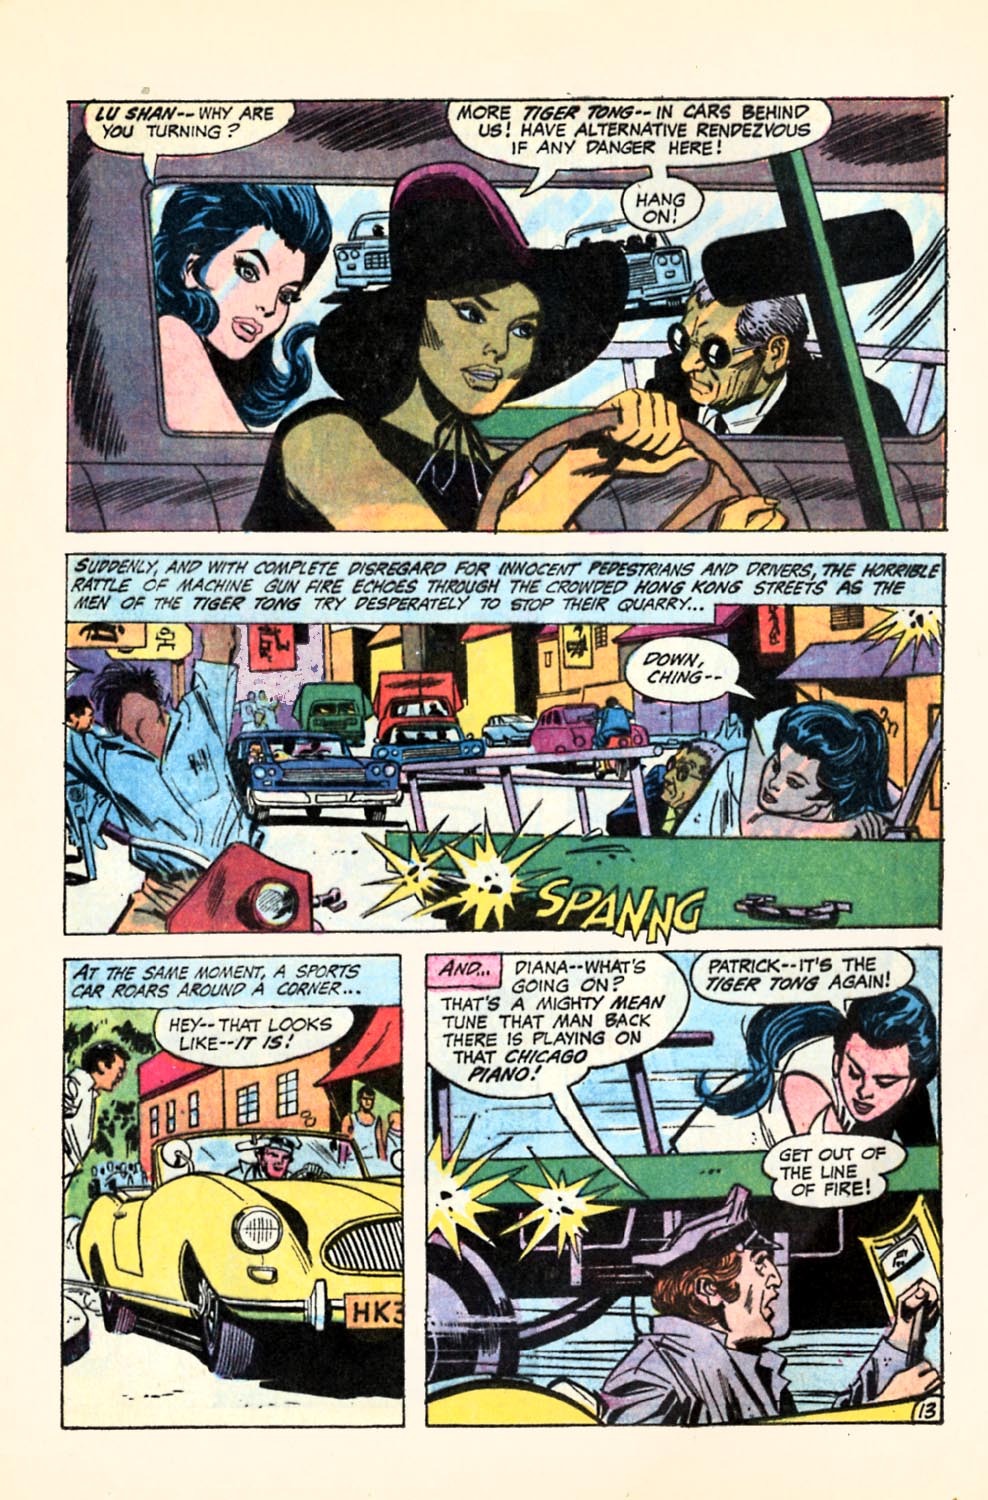 Wonder Woman v1 187 | Read All Comics Online